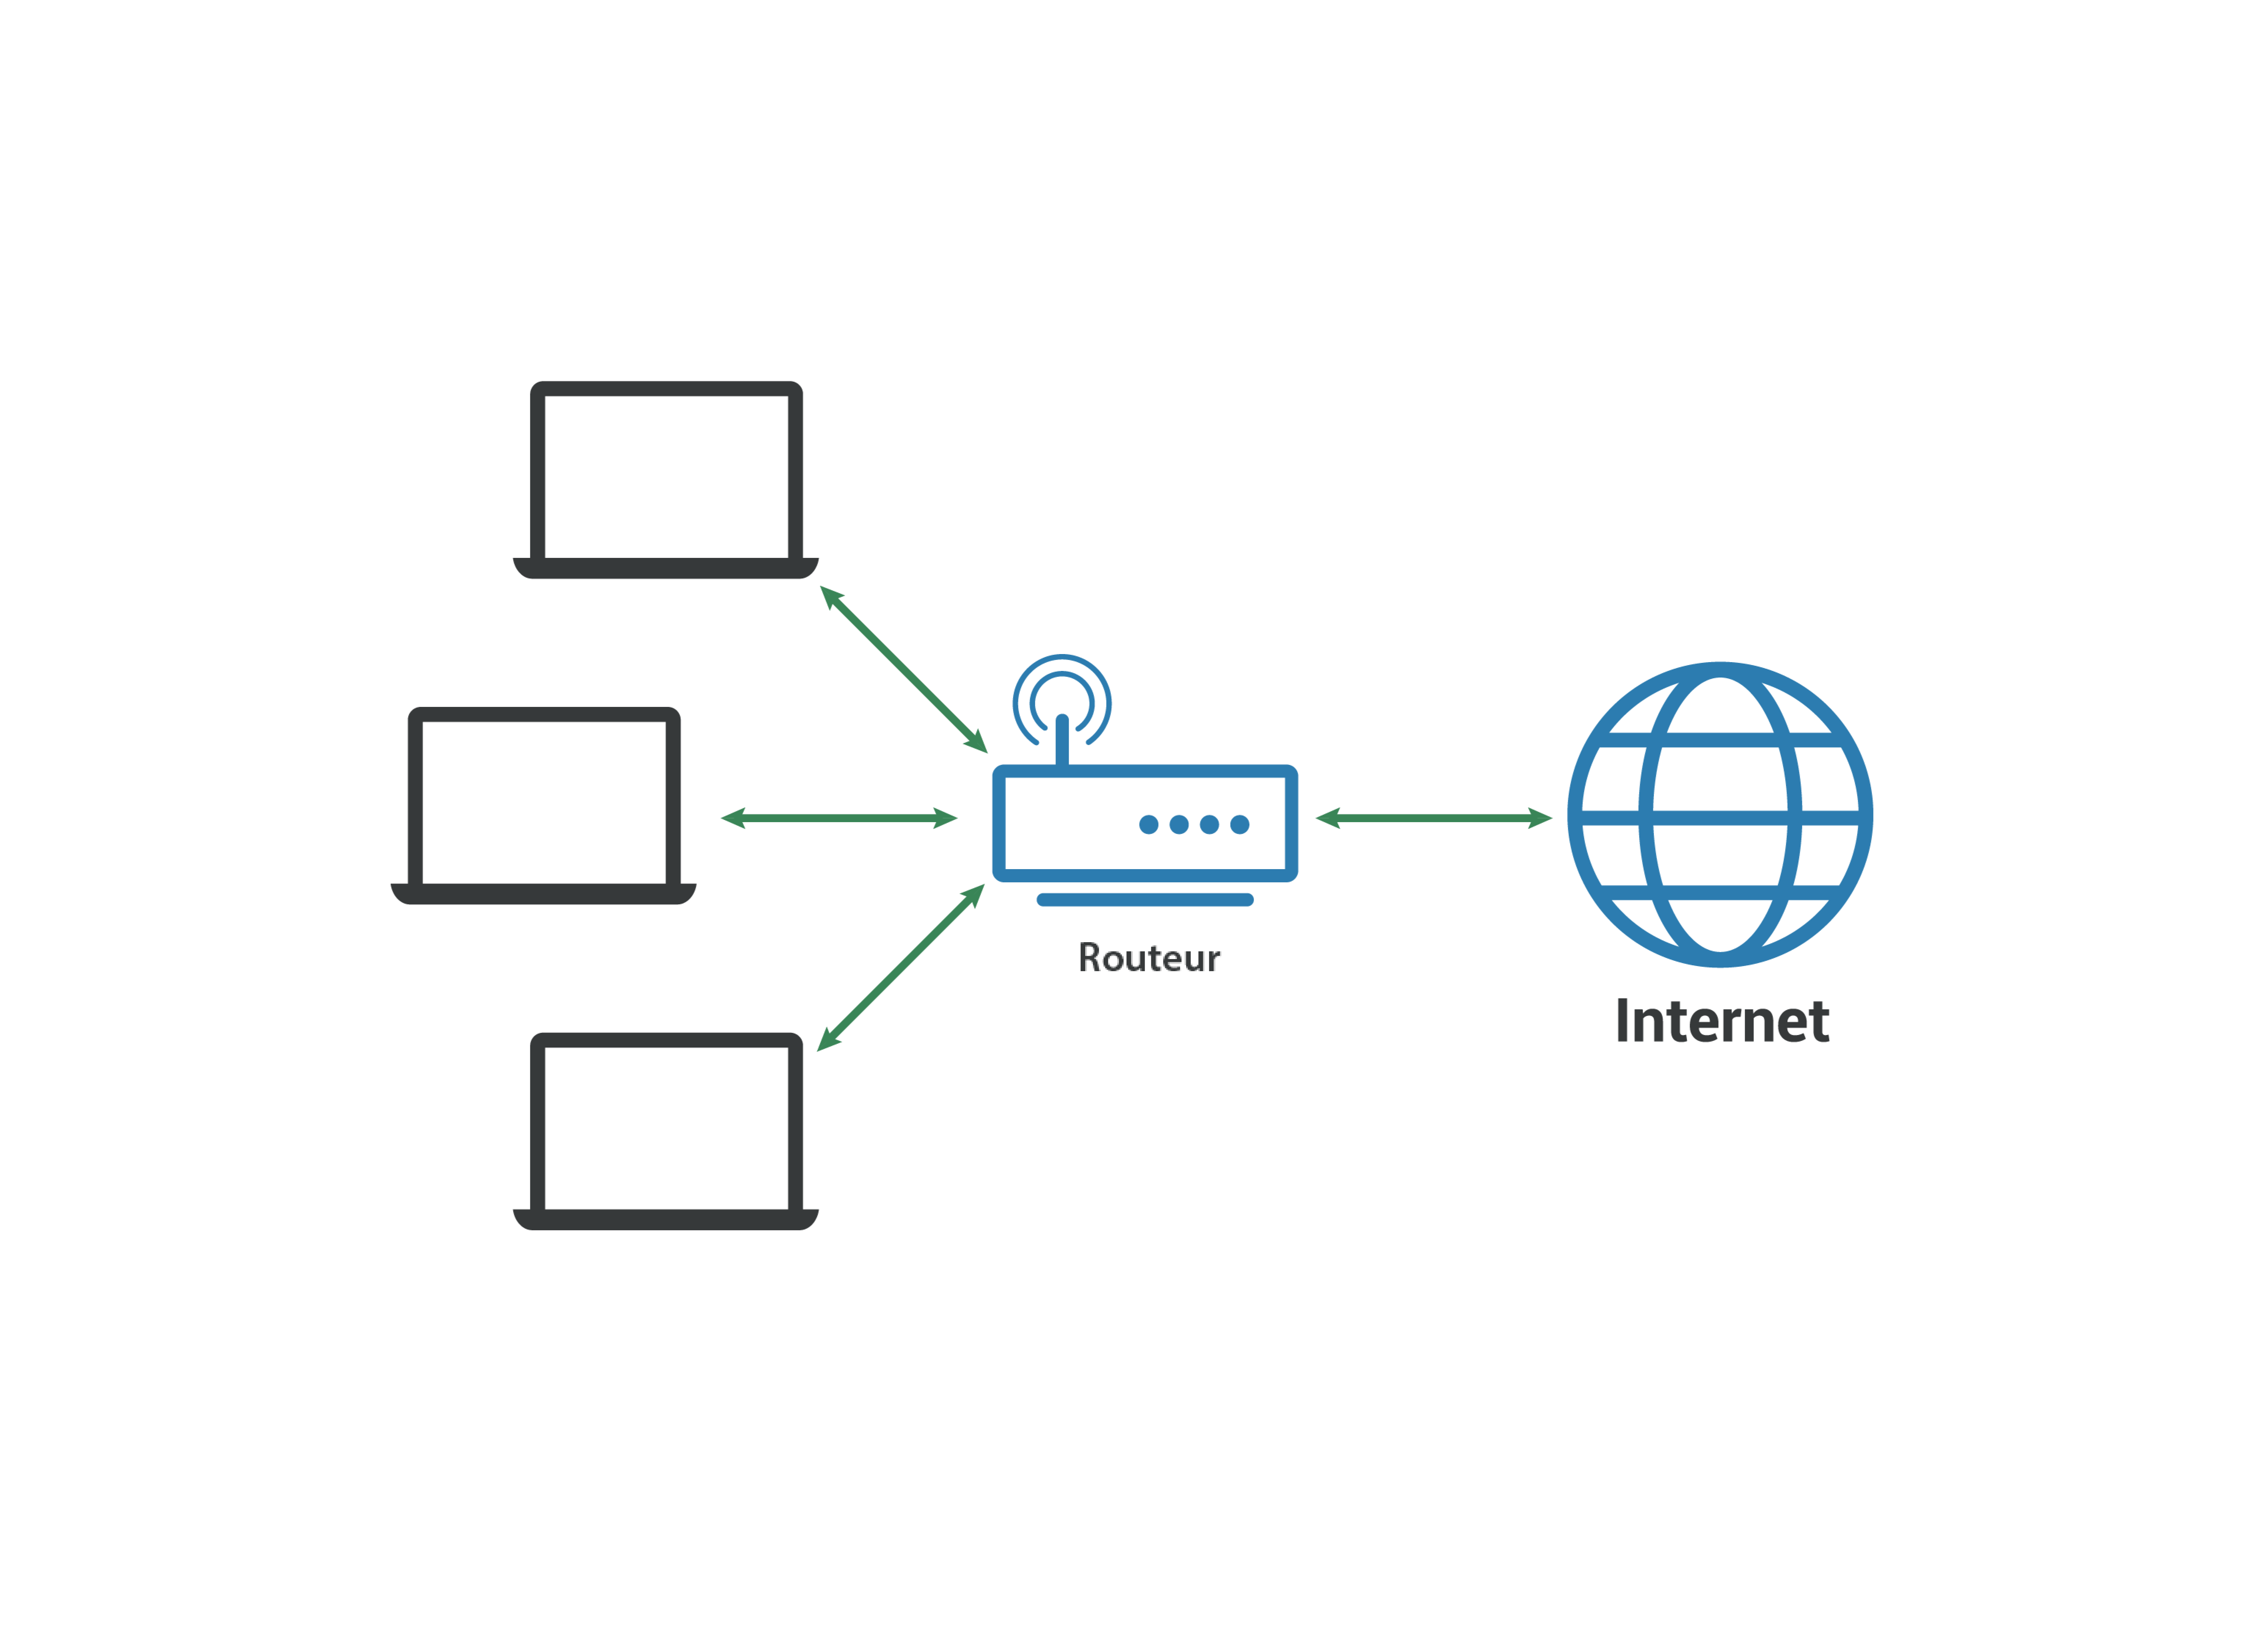 Réseau local (LAN) — Les ordinateurs se connectent à un routeur, lui-même connecté à Internet.